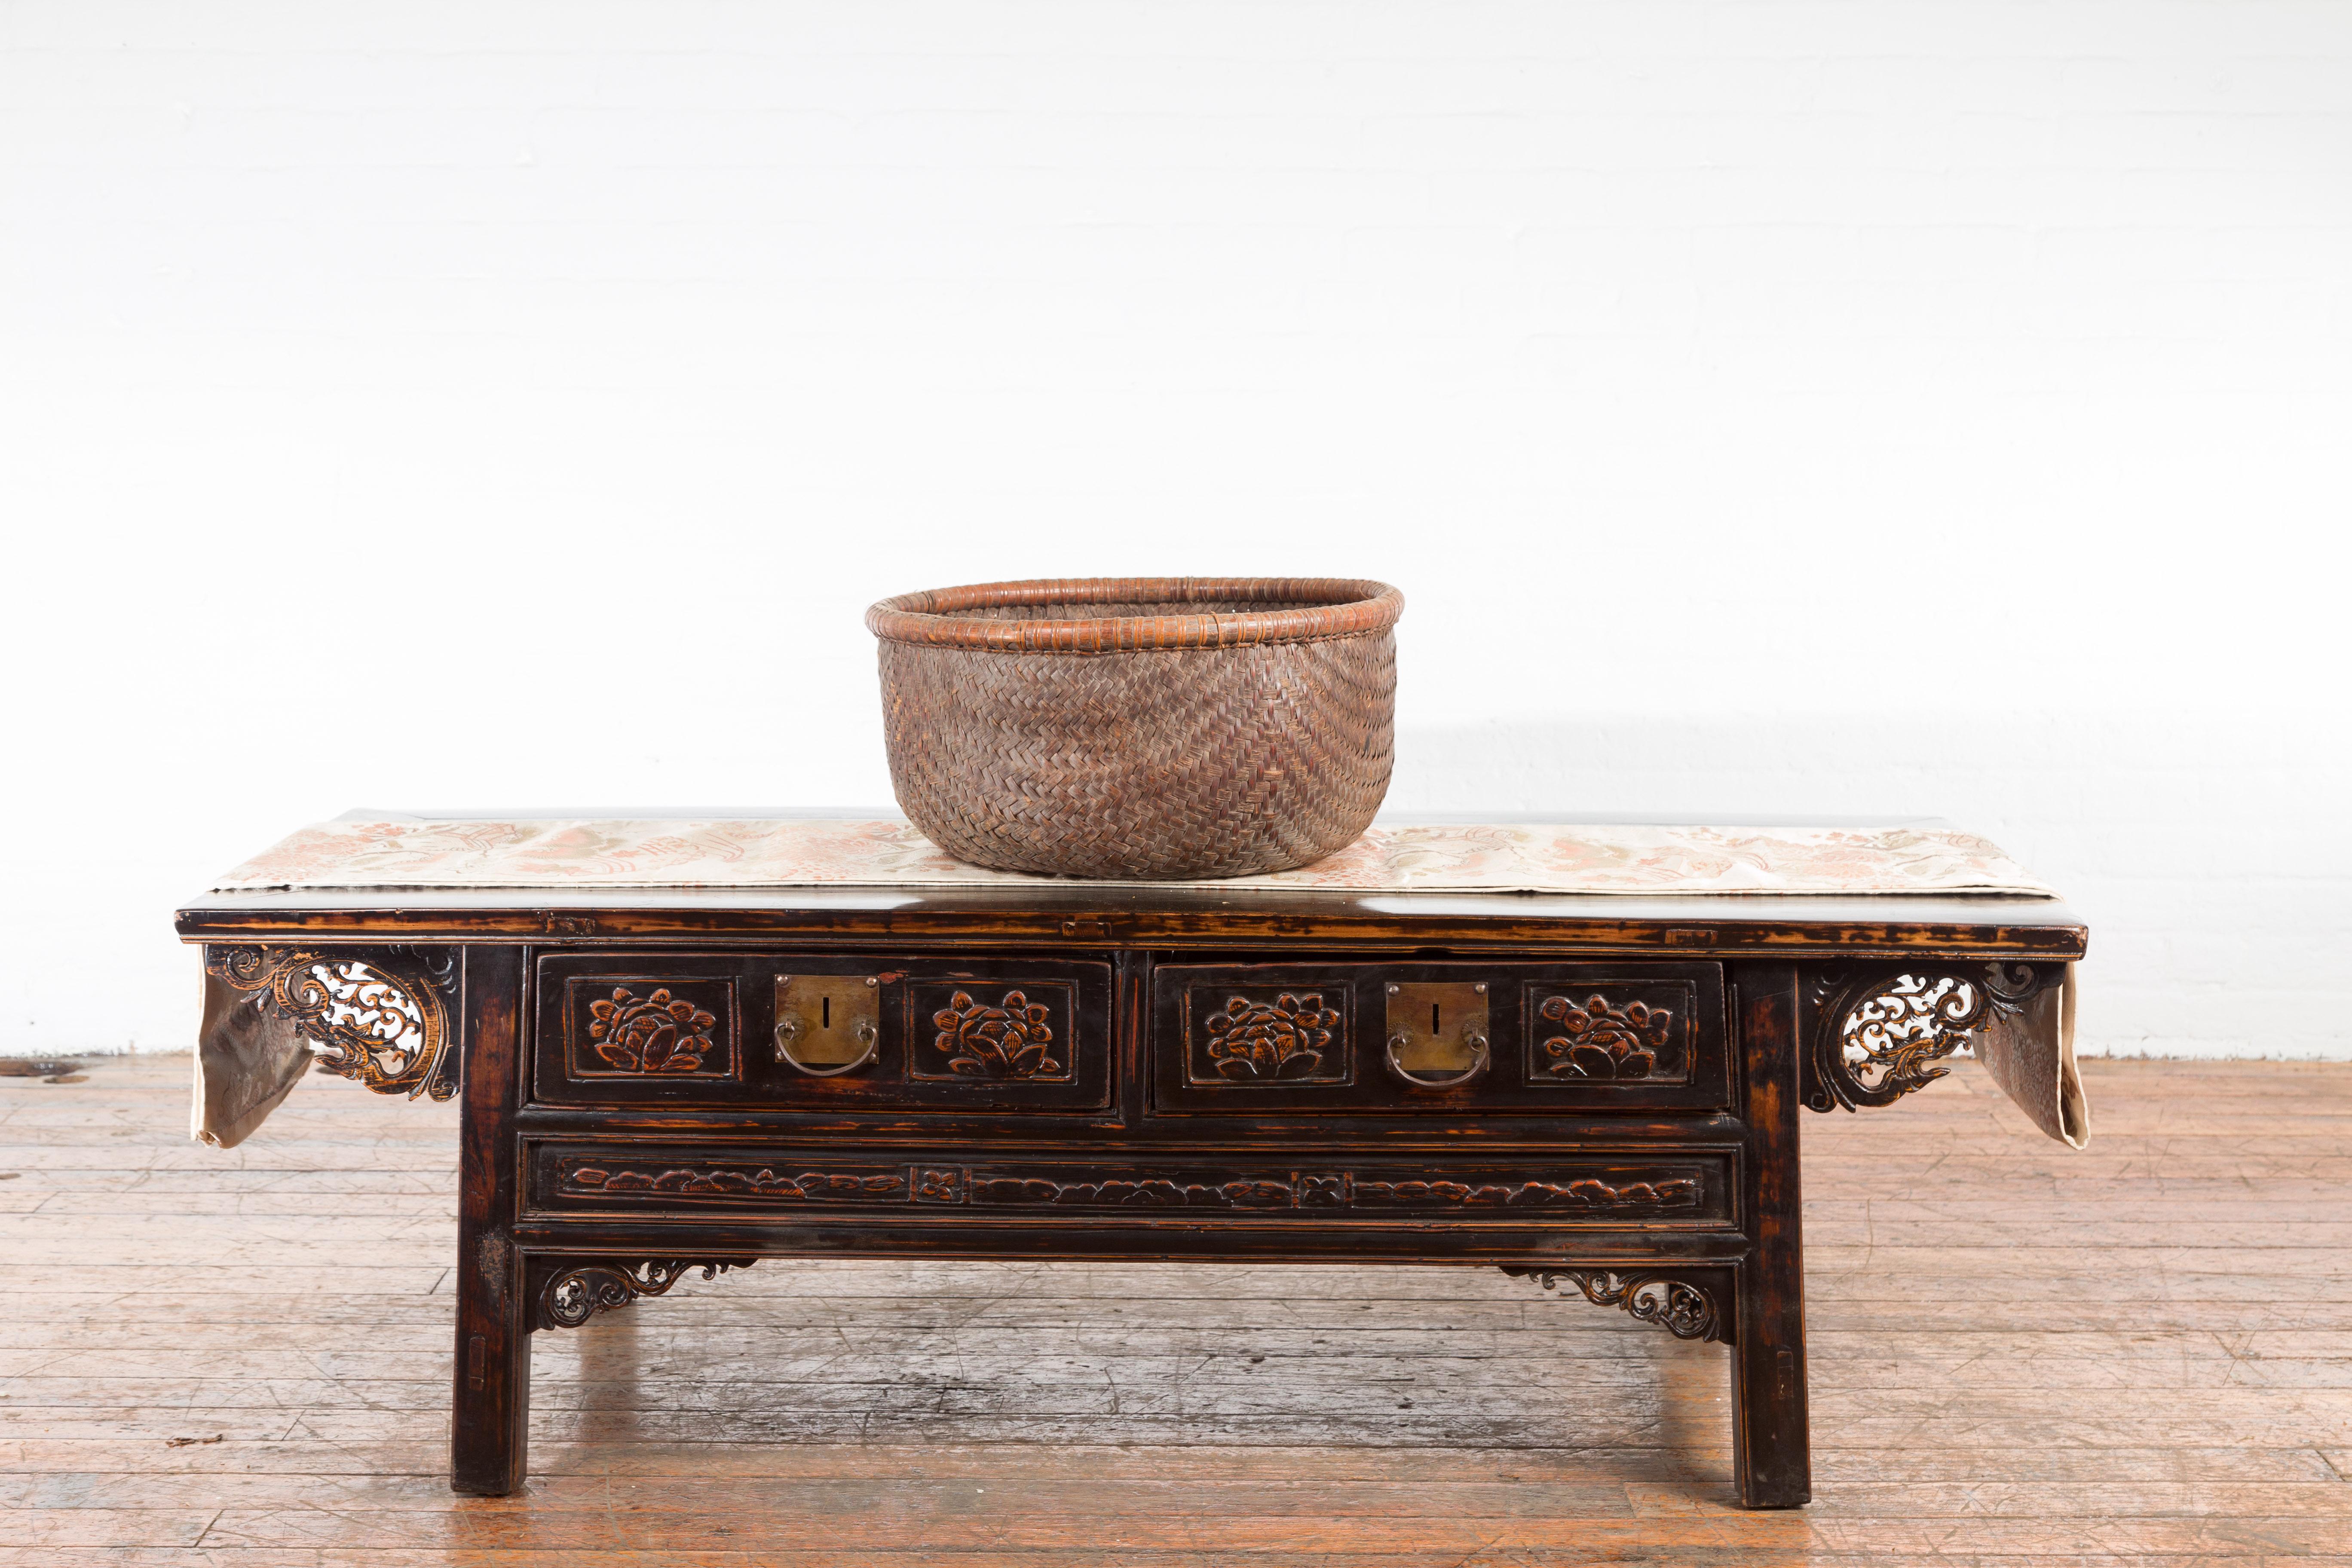 Ein antiker Rattan-Korb aus der chinesischen Qing-Dynastie aus dem 19. Jahrhundert, mit schöner Patina. Dieser Getreidekorb wurde im 19. Jahrhundert in China hergestellt und hat eine dünne Lippe, die über einem braunen, geflochtenen Rattankörper